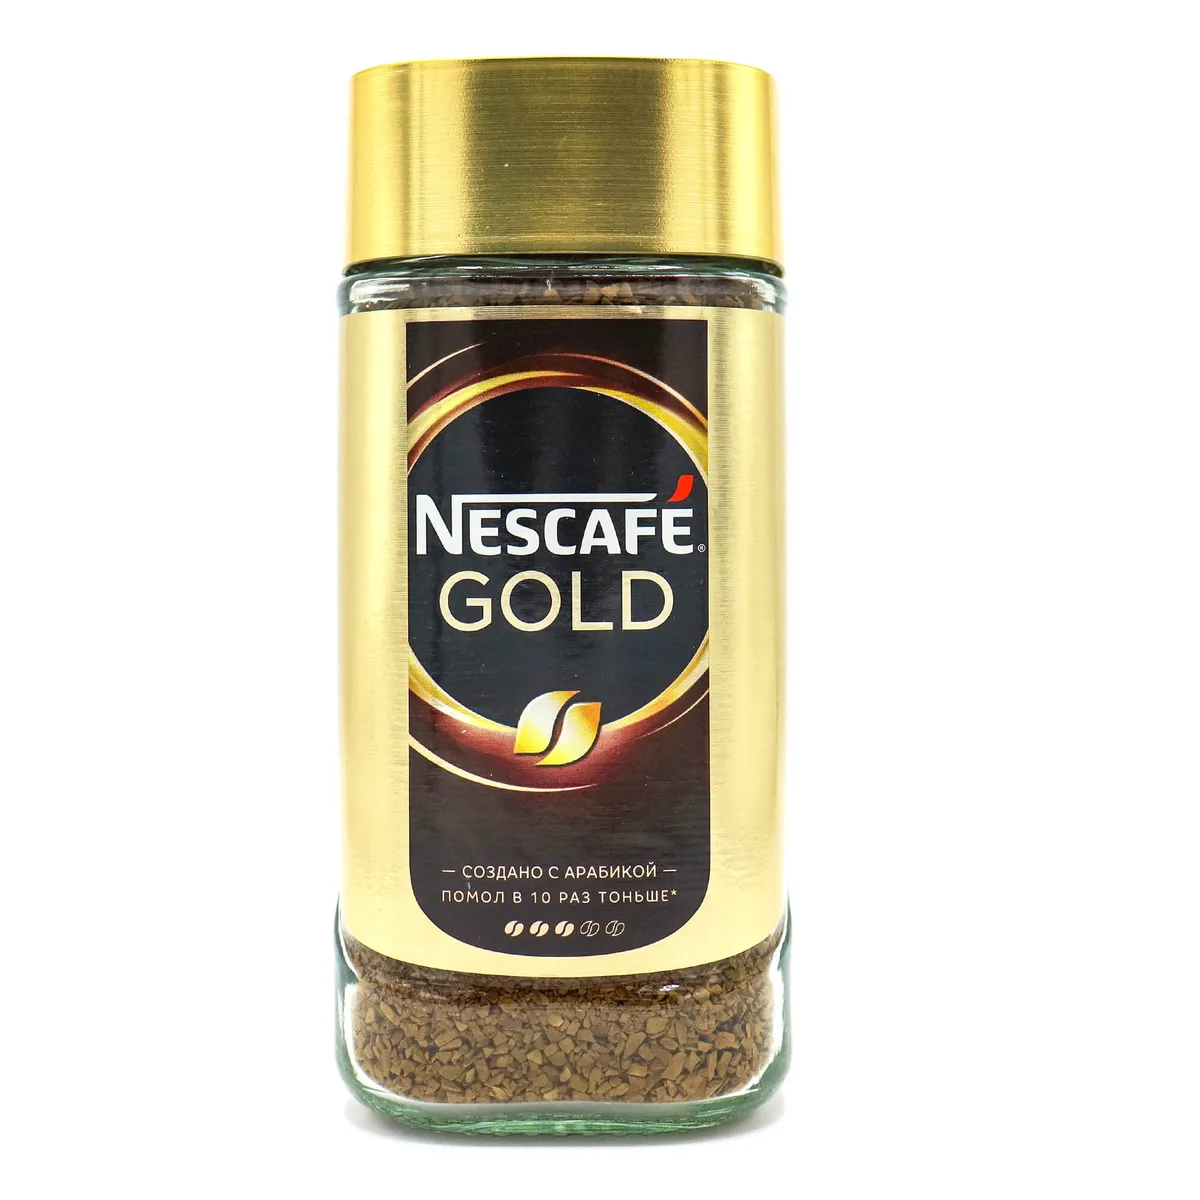 Nescafe gold 190 г. Кофе Нескафе Голд 190г. Кофе растворимый Nescafe Gold, 190г. Нескафе Голд 190 стекло.